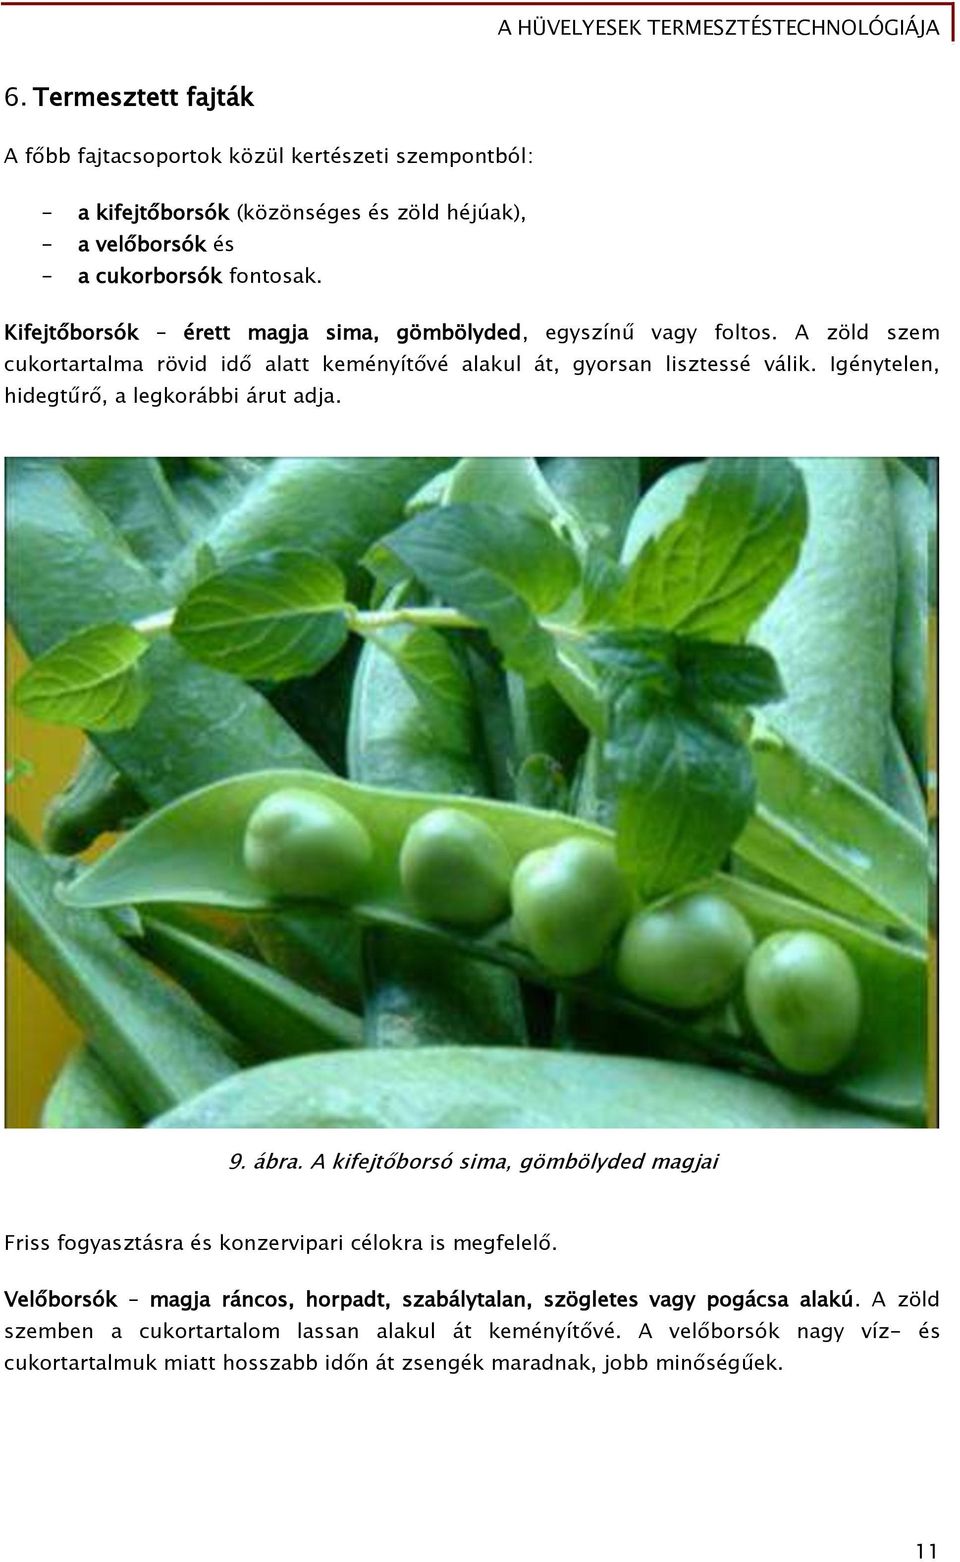 A hüvelyesek termesztéstechnológiája - PDF Ingyenes letöltés